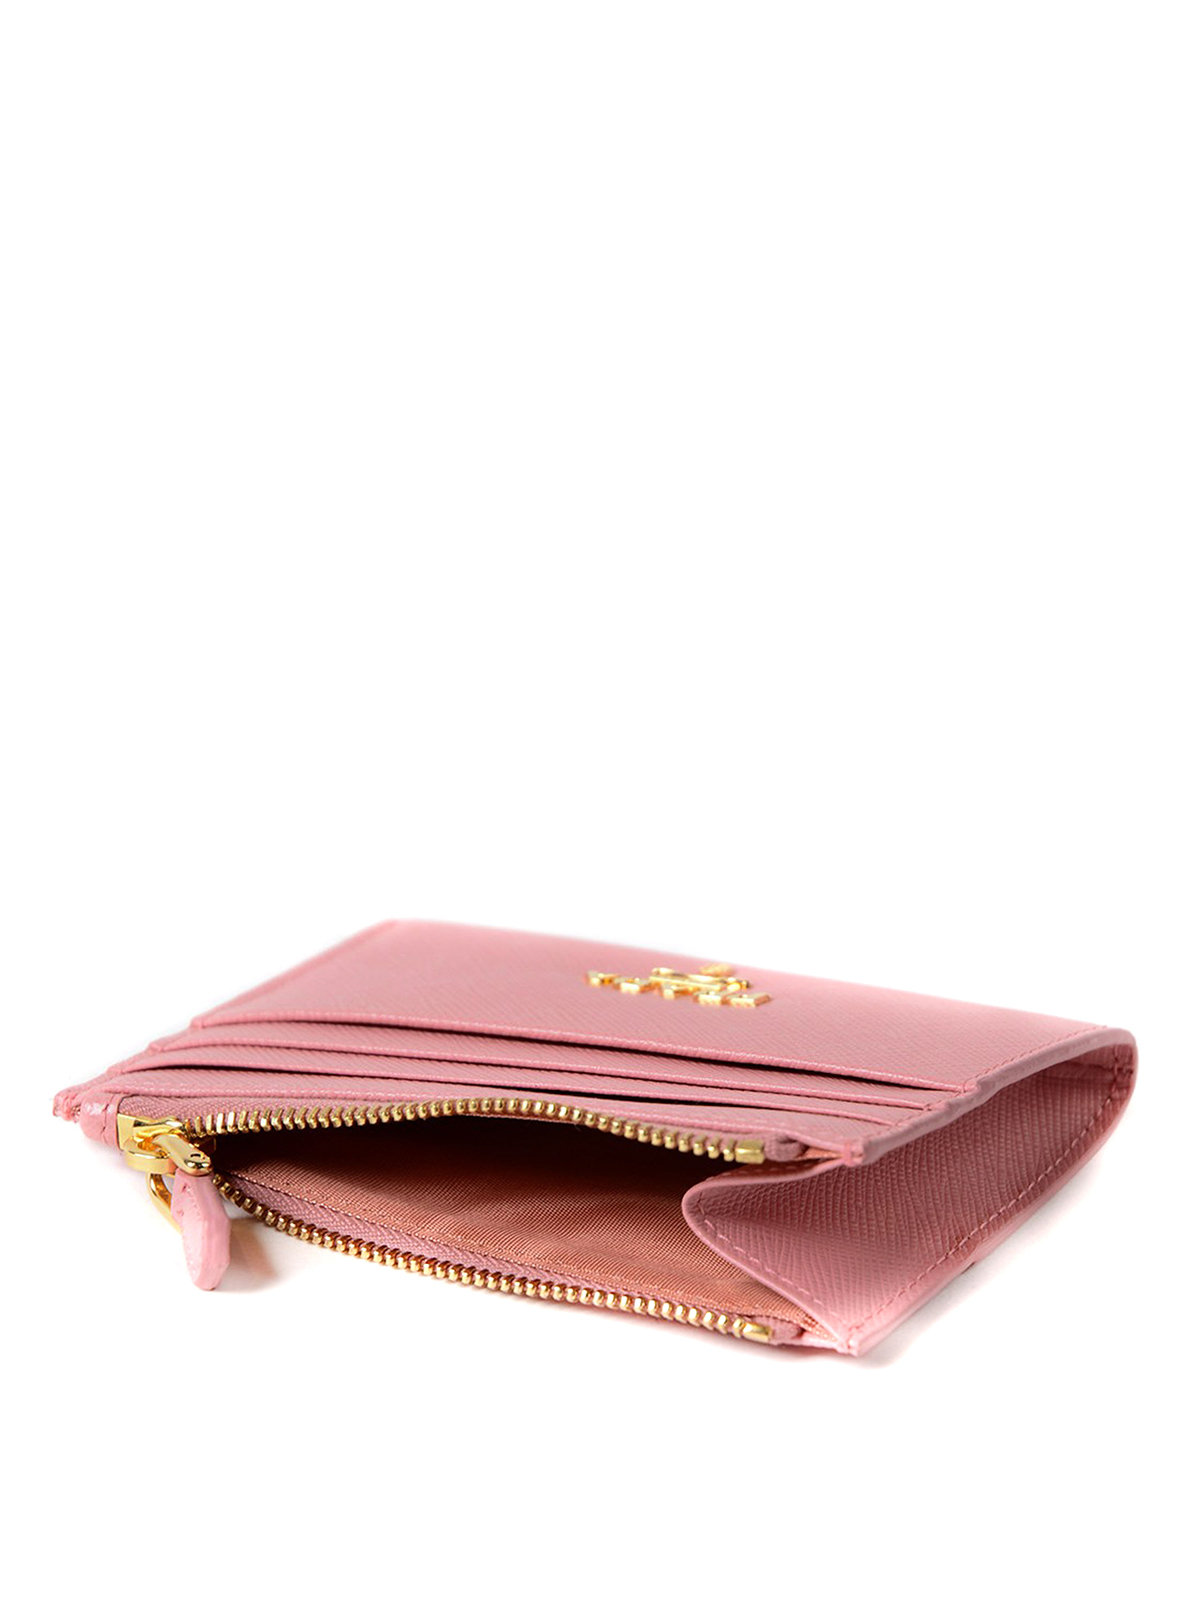 prada saffiano card case with zip compartment